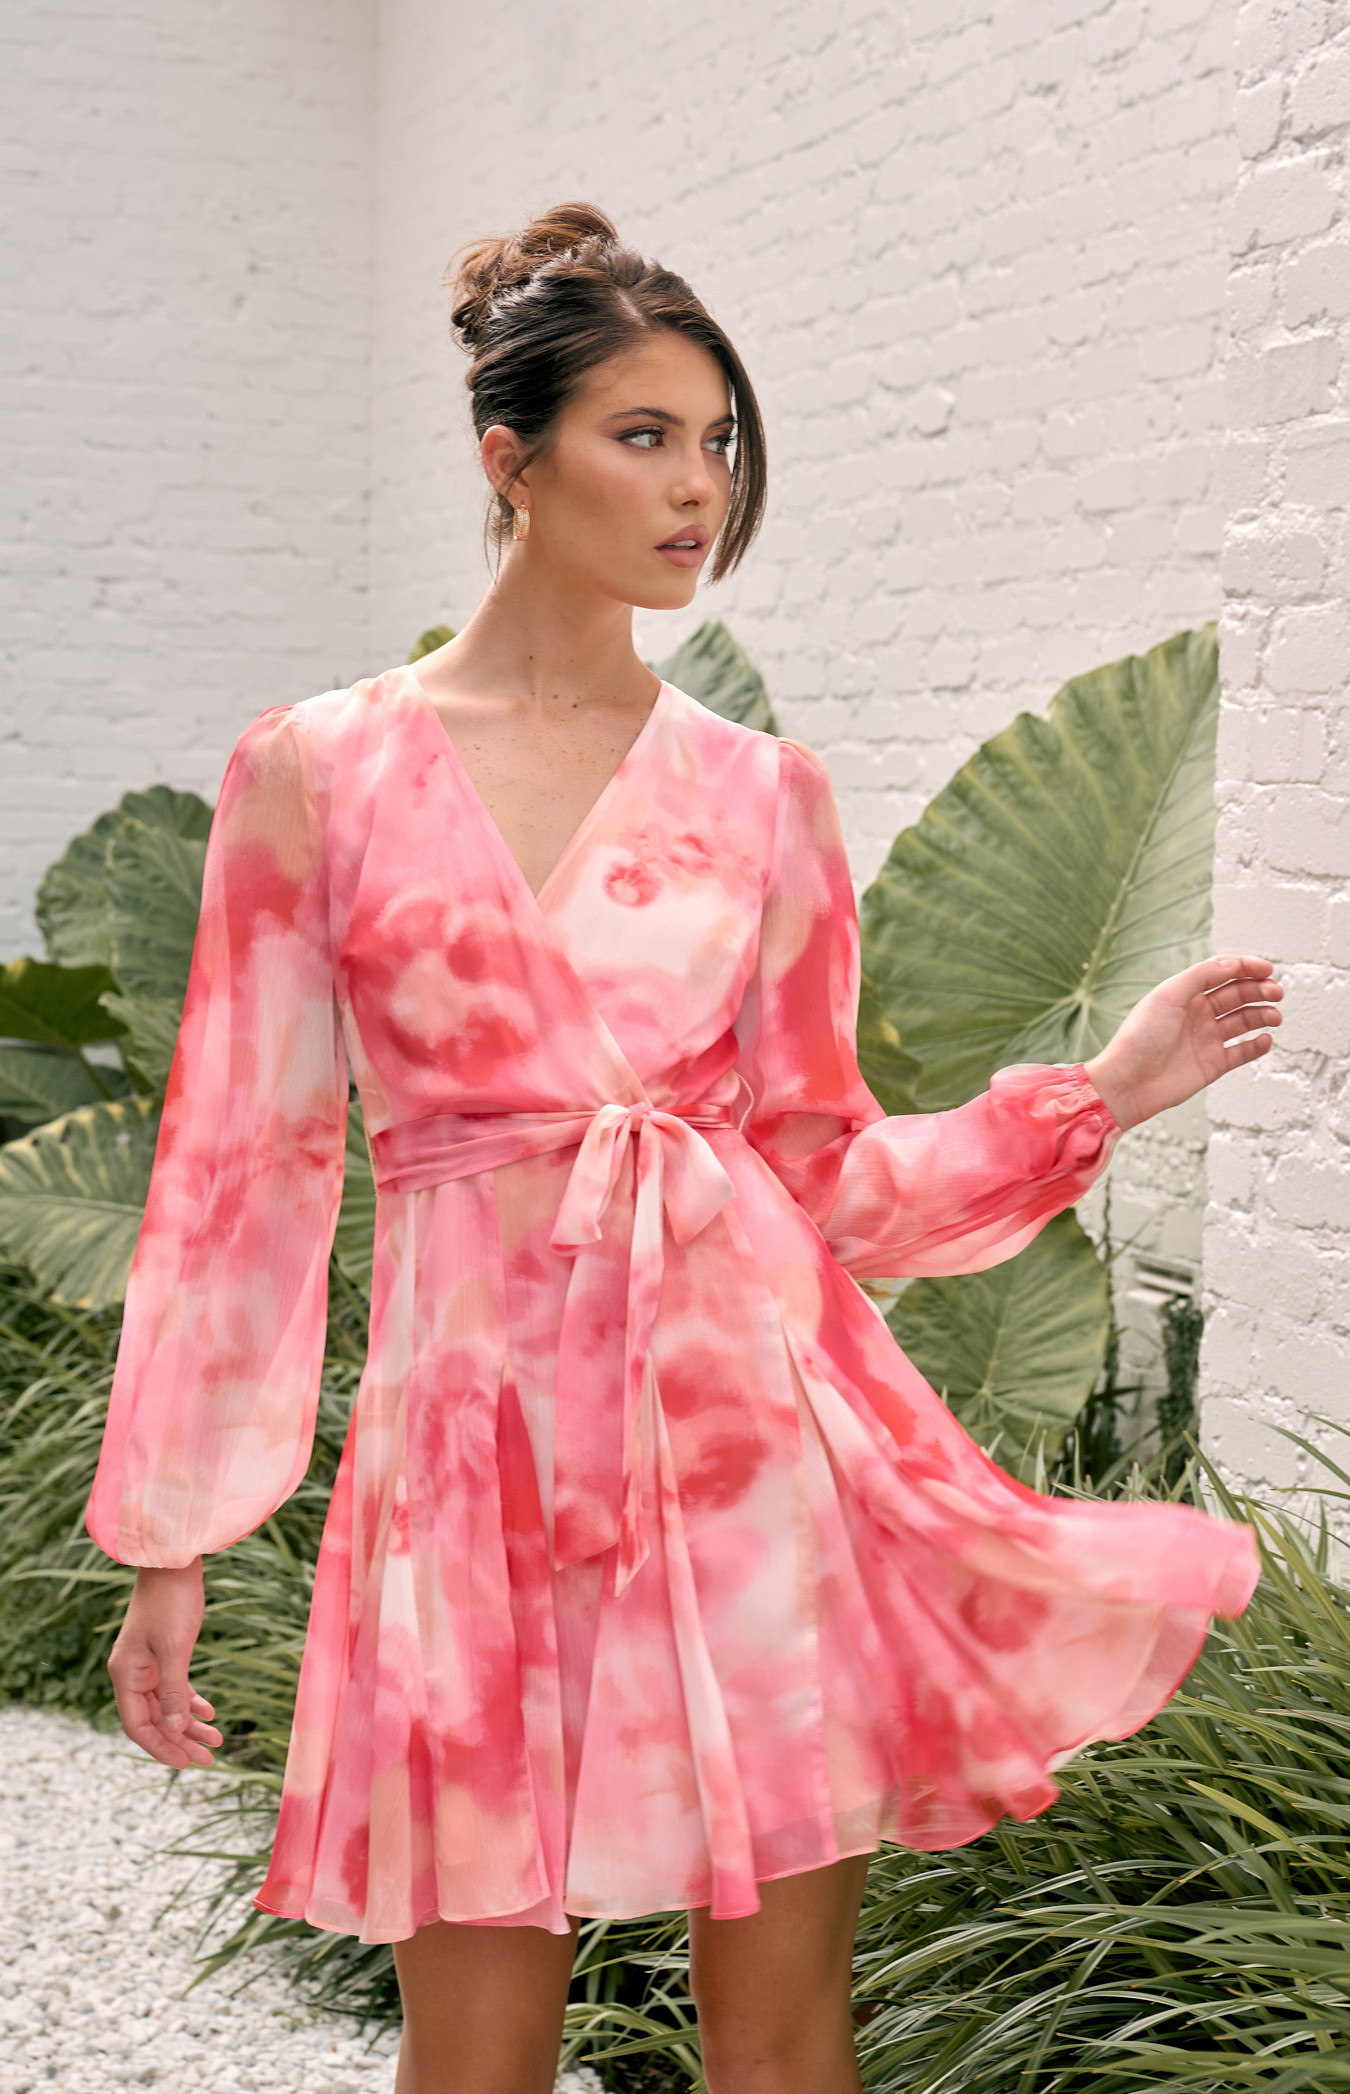 Blurred Floral Print Godet Detail Dress (SDR1569B)